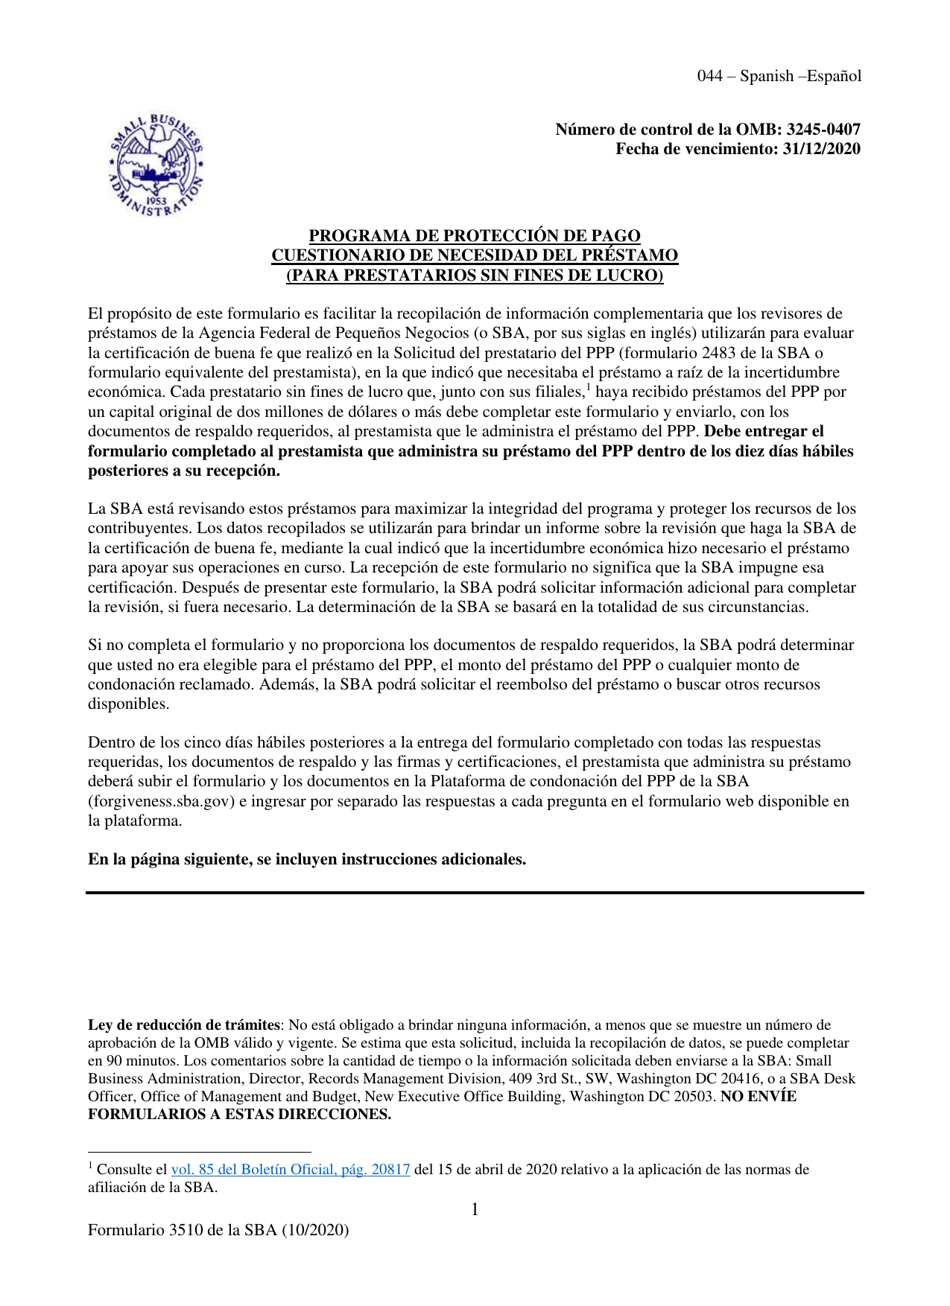 SBA Formulario 3510 Programa De Proteccion De Pago Cuestionario De Necesidad Del Prestamo (Para Prestatarios Sin Fines De Lucro) (Spanish), Page 1